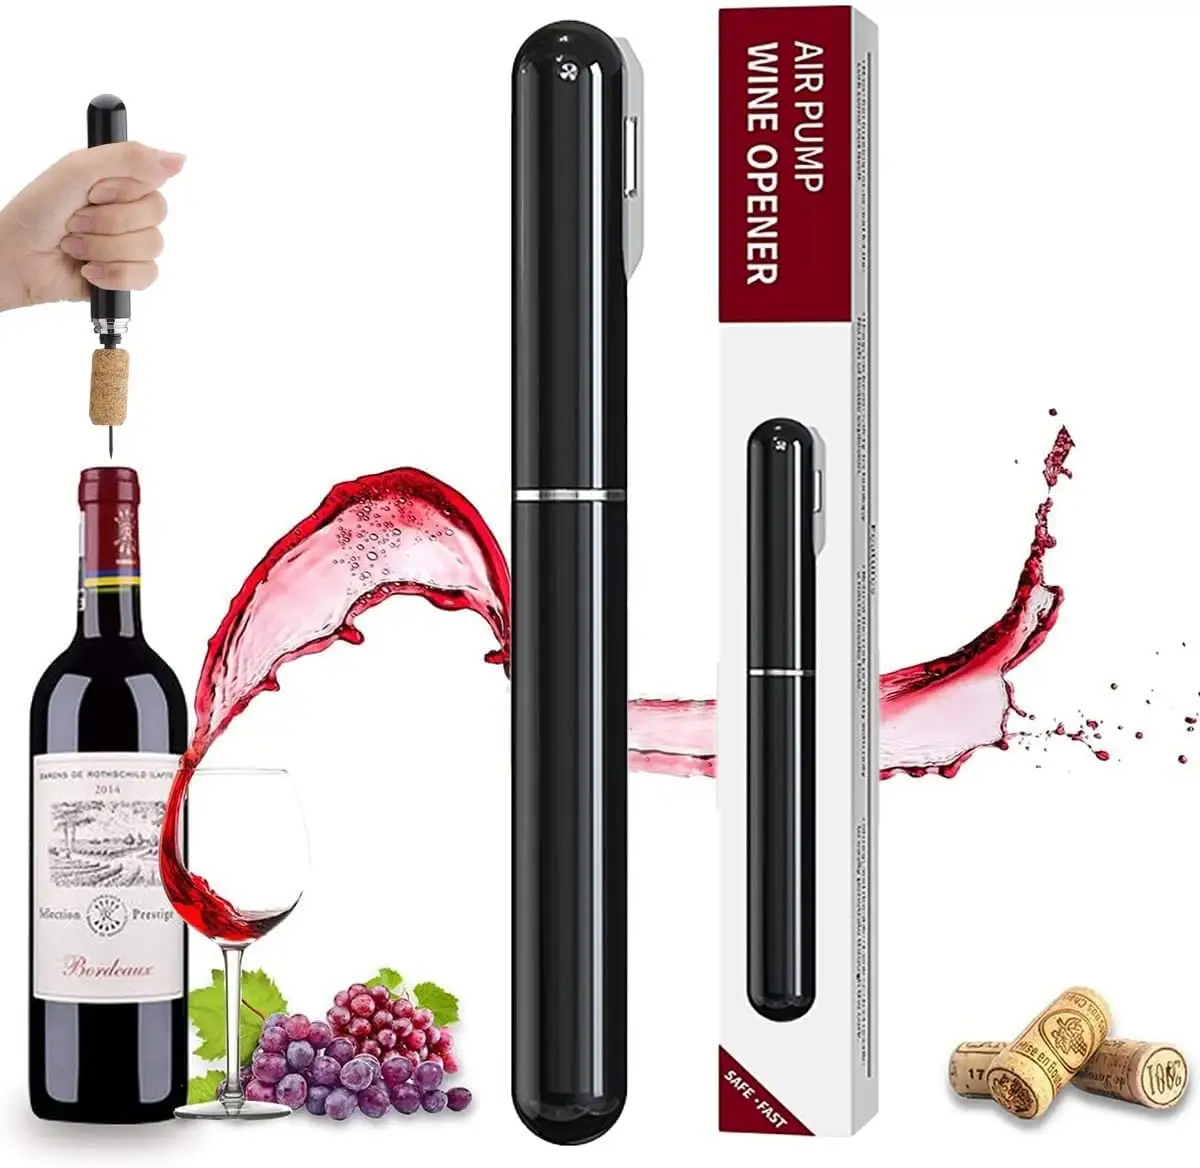 2-in-1-Luftdruck-Weinöffner mit Folien schneider, Luftpumpen-Wein öffner